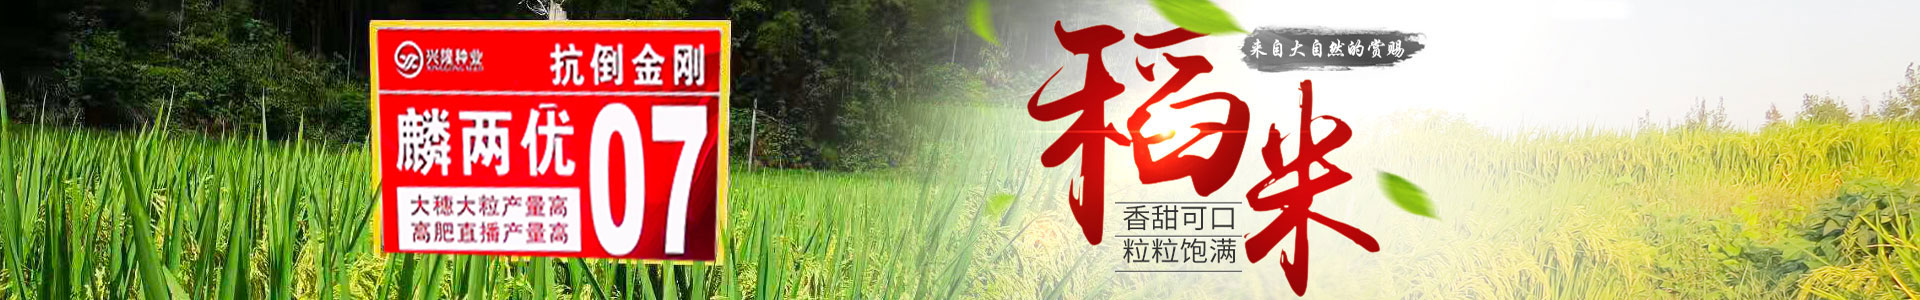 湖南凯发网站种业有限公司_长沙稻谷种植与销售|长沙农作物品种的选育